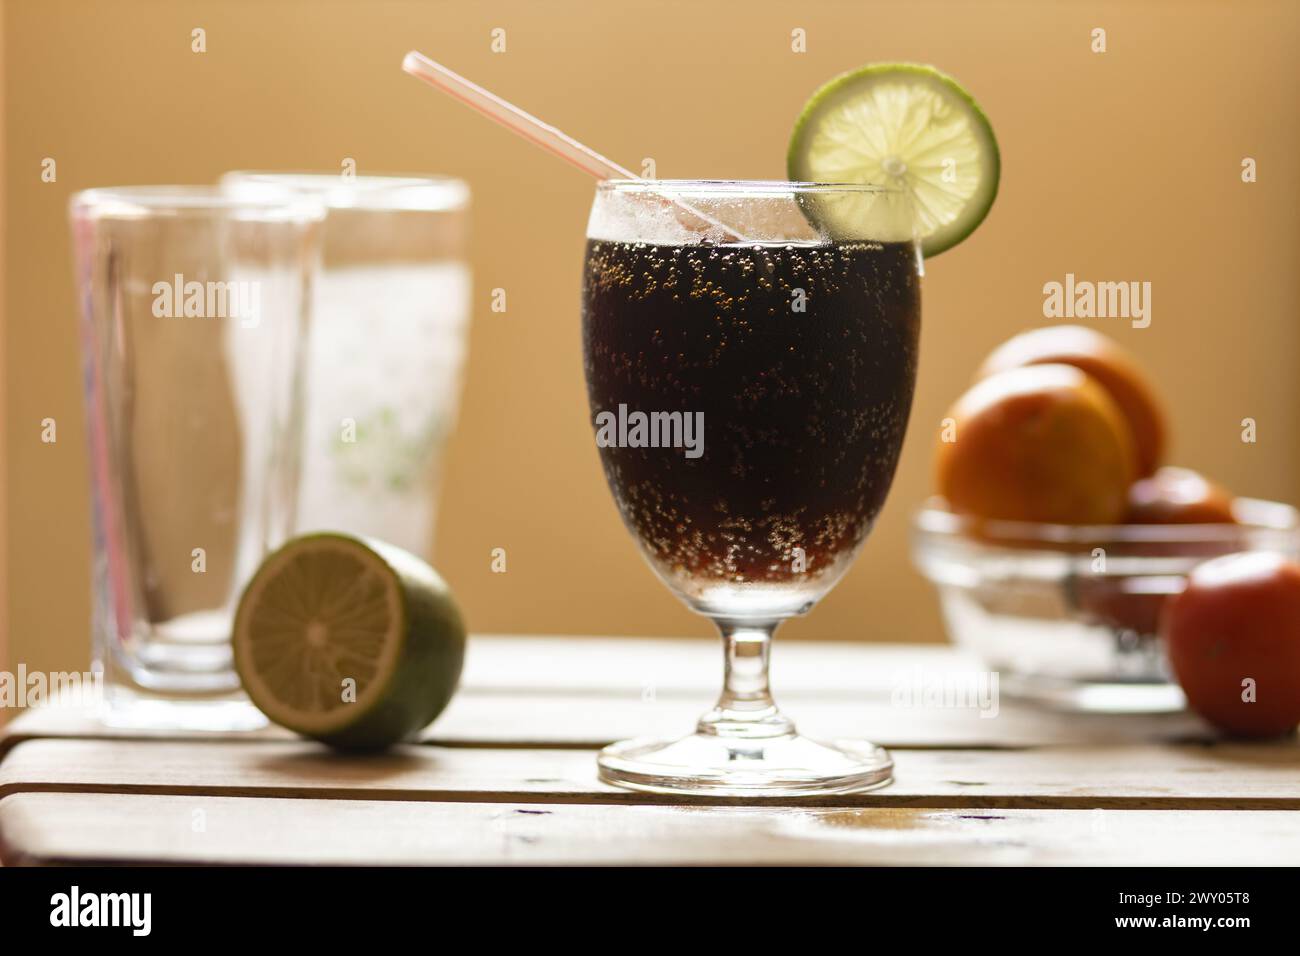 Erfrischende Getränke löschen den Durst und lindern die Hitze des Sommers. Stockfoto